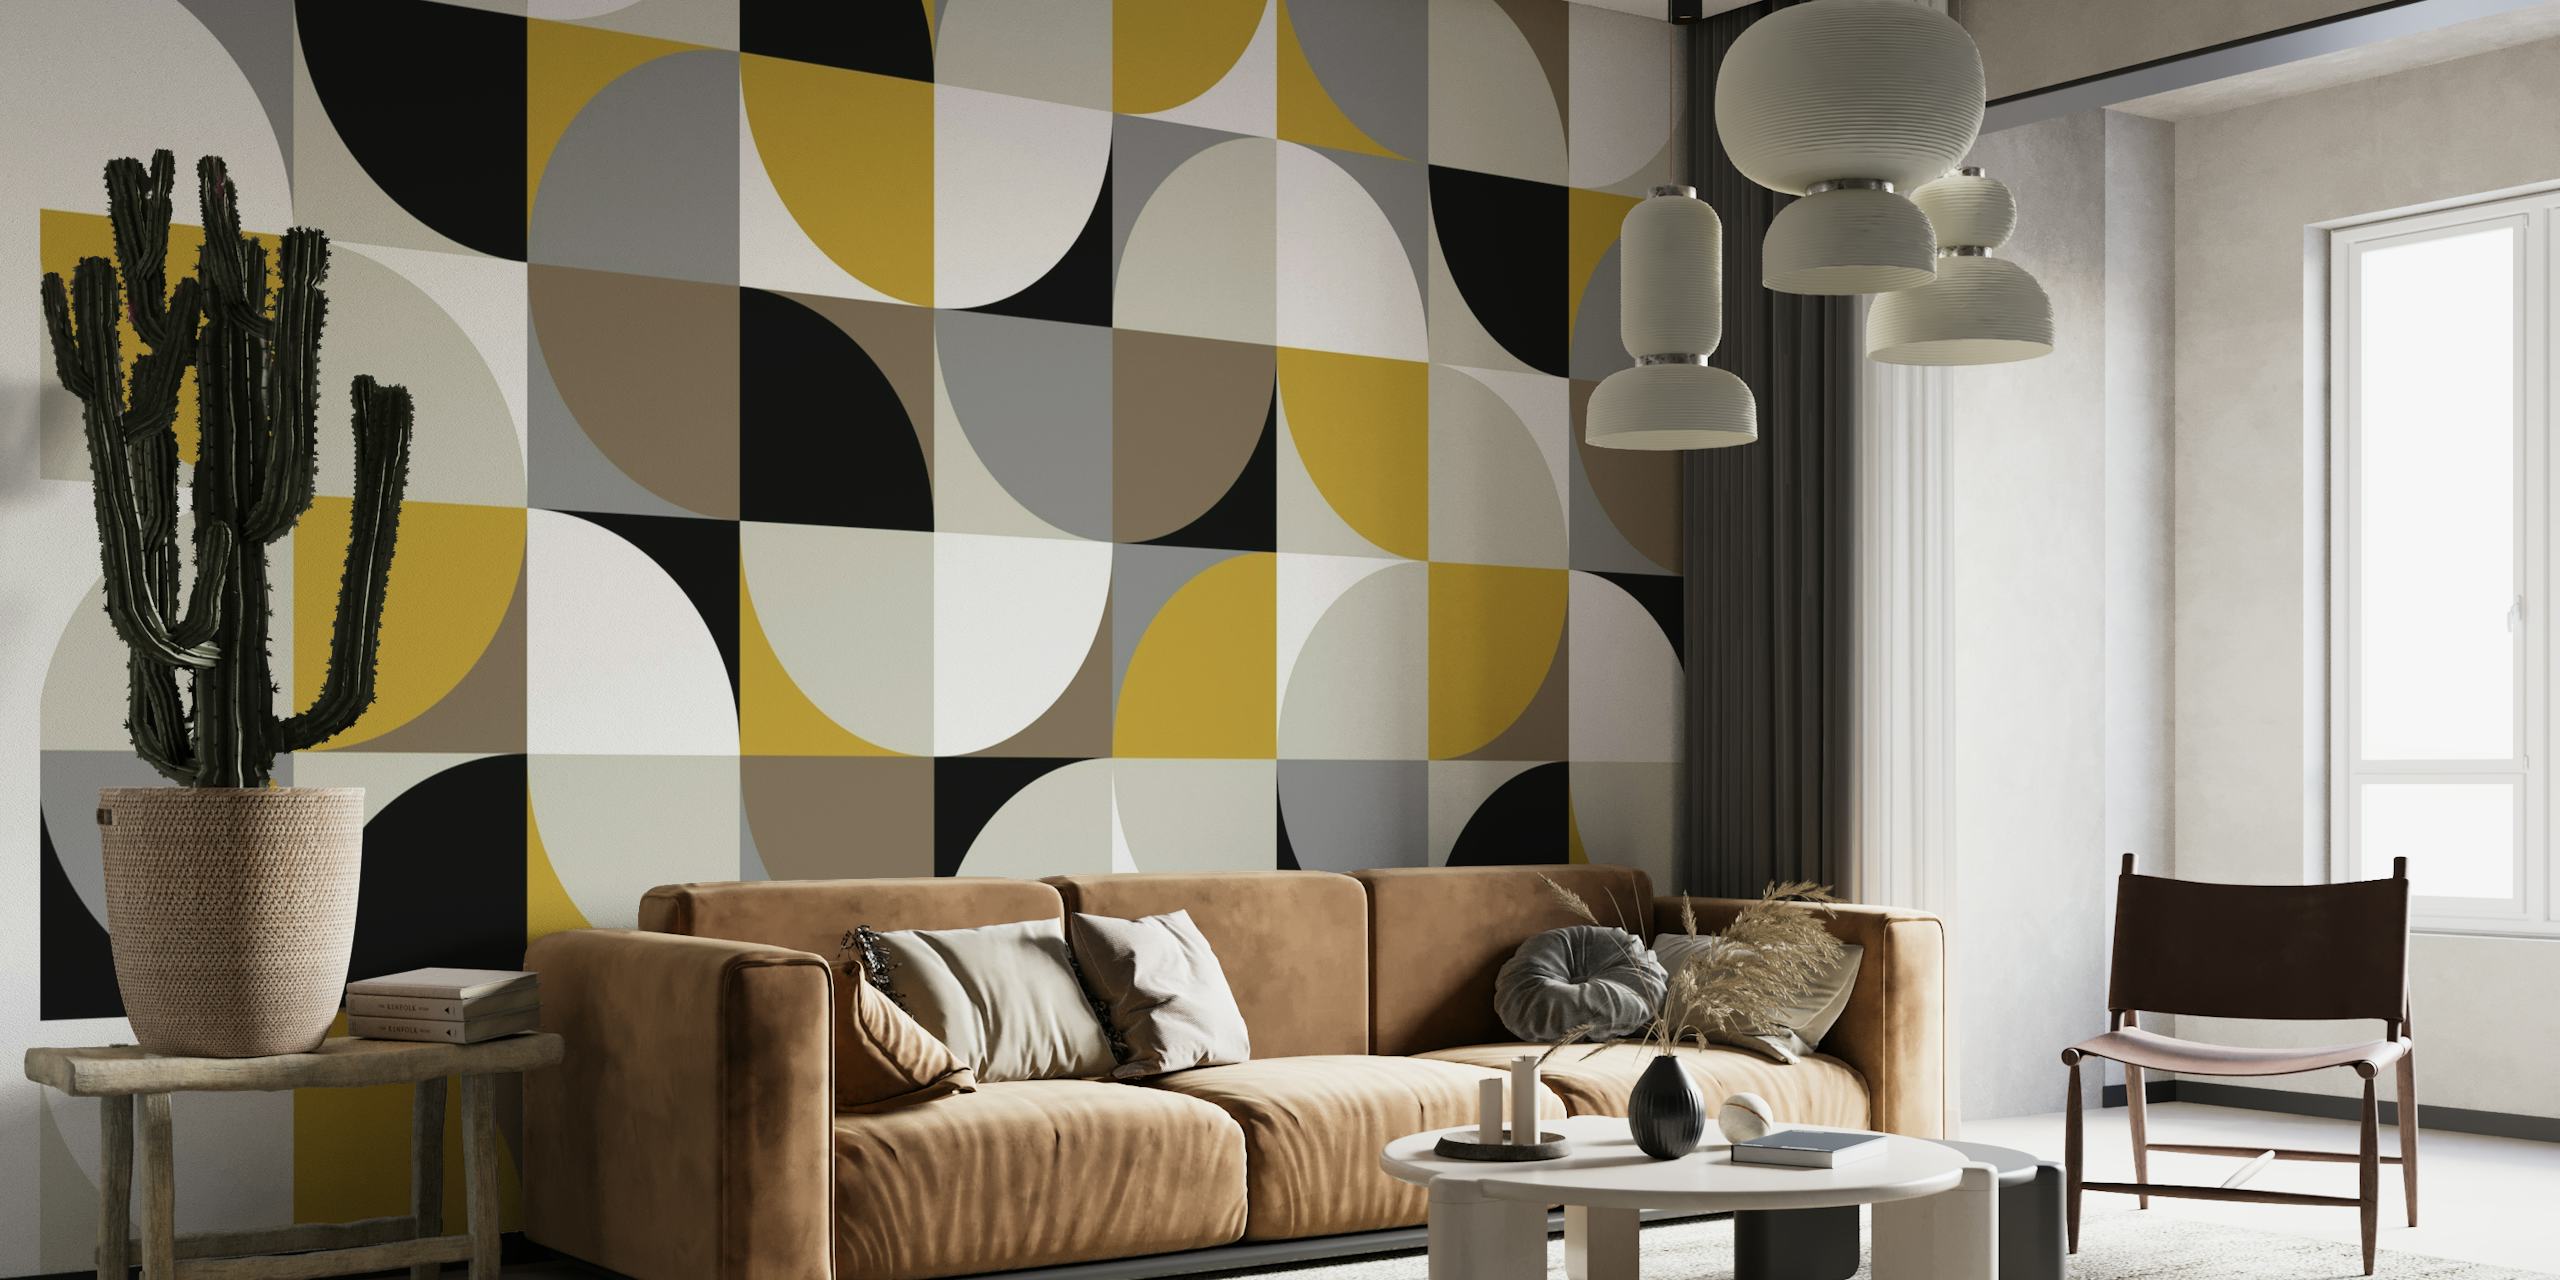 Diseño de cuadrados mod retro en negro, blanco, gris y dorado para un mural de pared